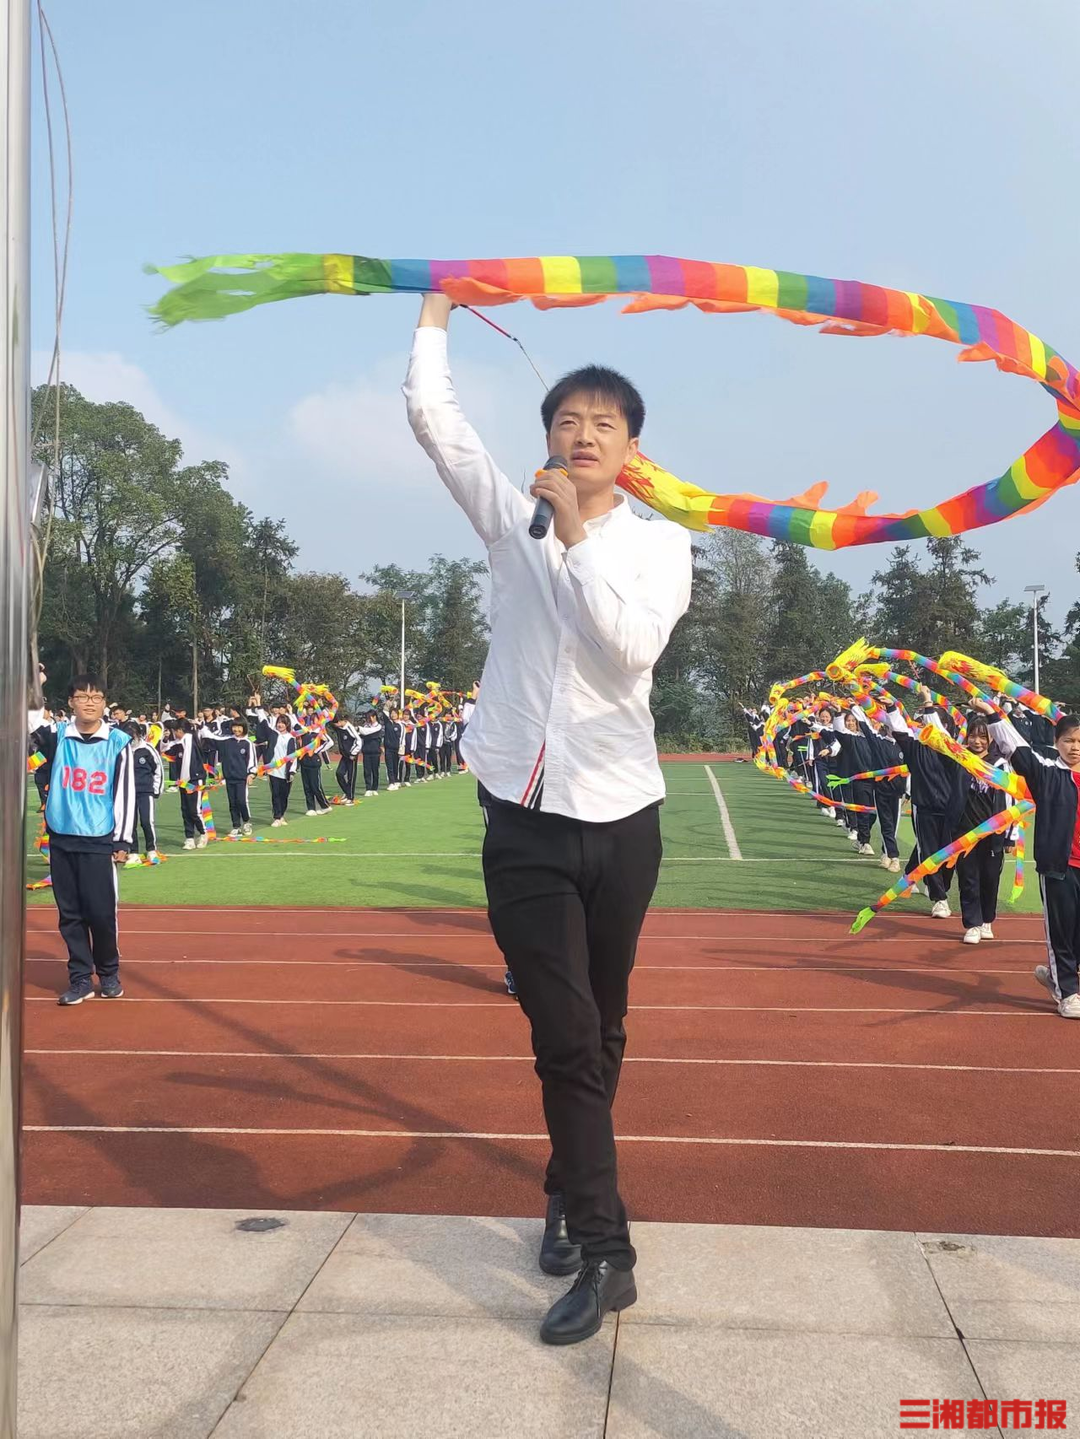 村校校长带领全校舞起200条中国龙，想让学生“飞”向更大舞台